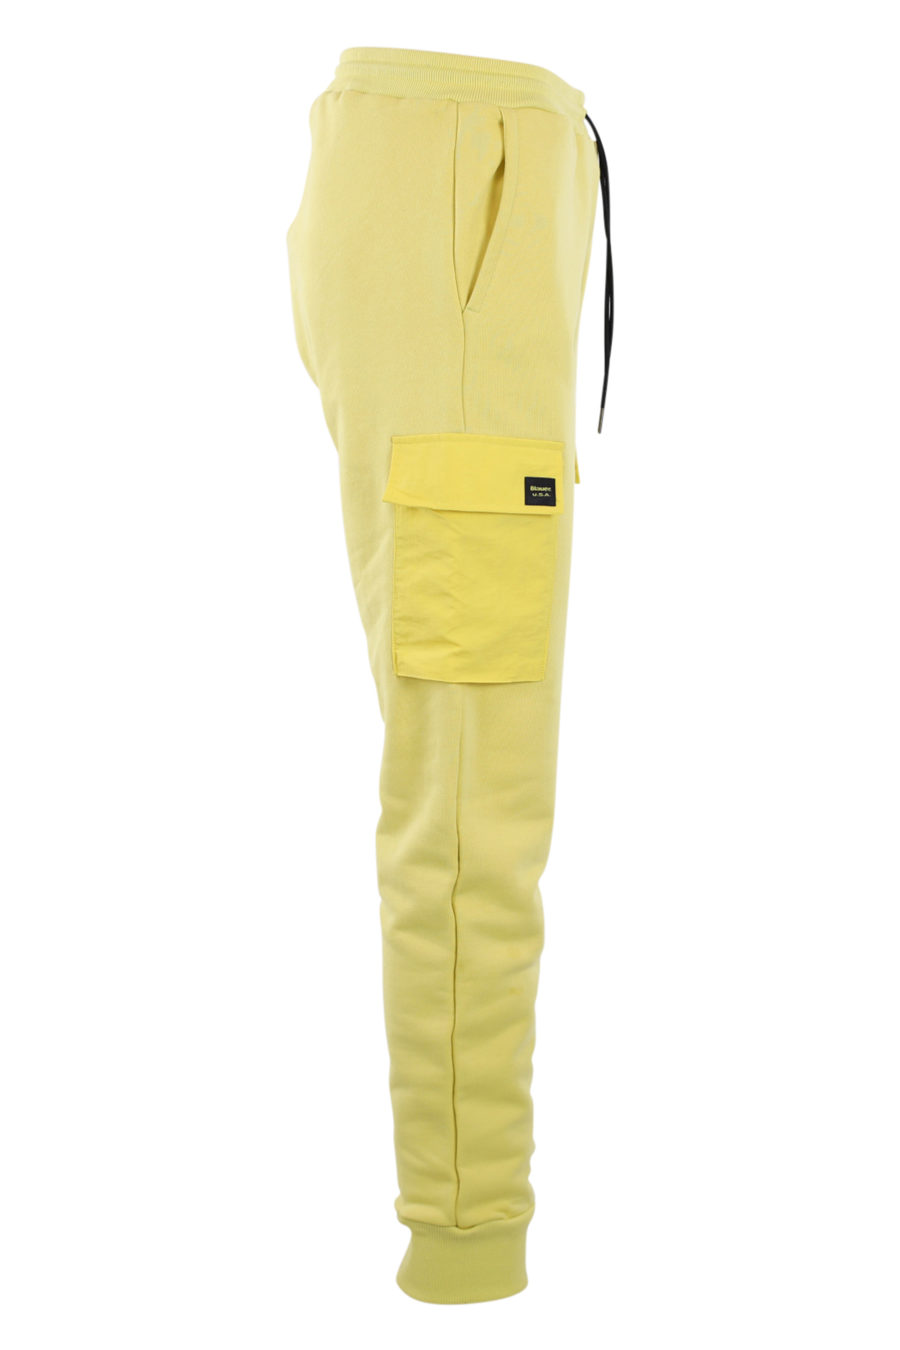 Bas de survêtement jaune avec poches - IMG 0905